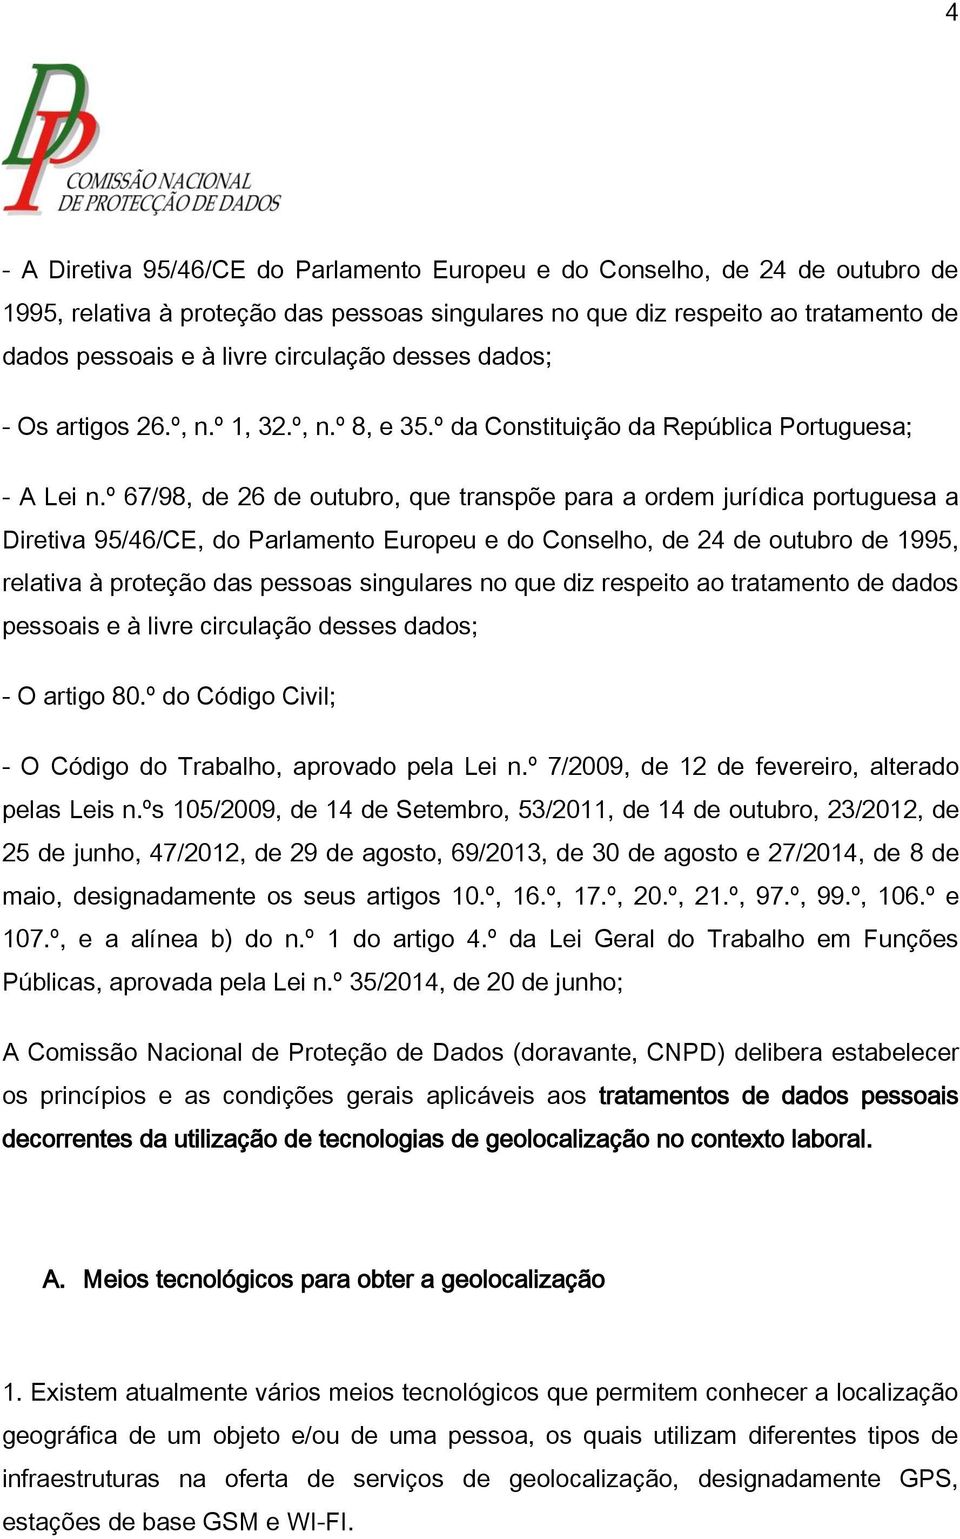 º 67/98, de 26 de outubro, que transpõe para a ordem jurídica portuguesa a Diretiva 95/46/CE, do Parlamento Europeu e do Conselho, de 24 de outubro de 1995, relativa à proteção das pessoas singulares